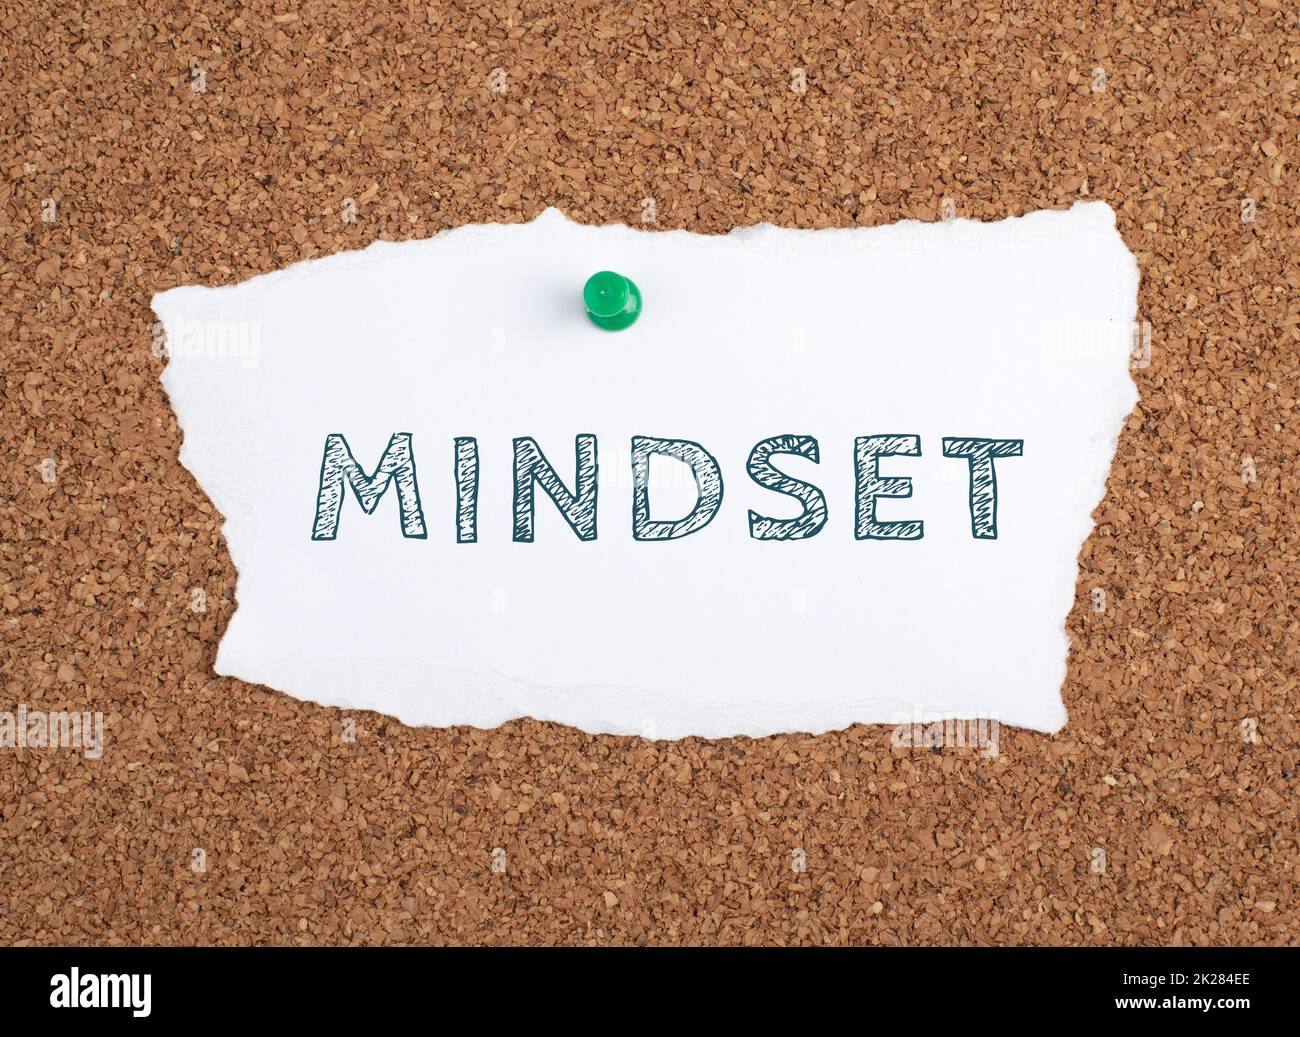 Le mot mindest est debout sur un papier, tableau d'affichage, concept de coaching, changer de croit, démarrer une nouvelle entreprise, la pensée positive Banque D'Images